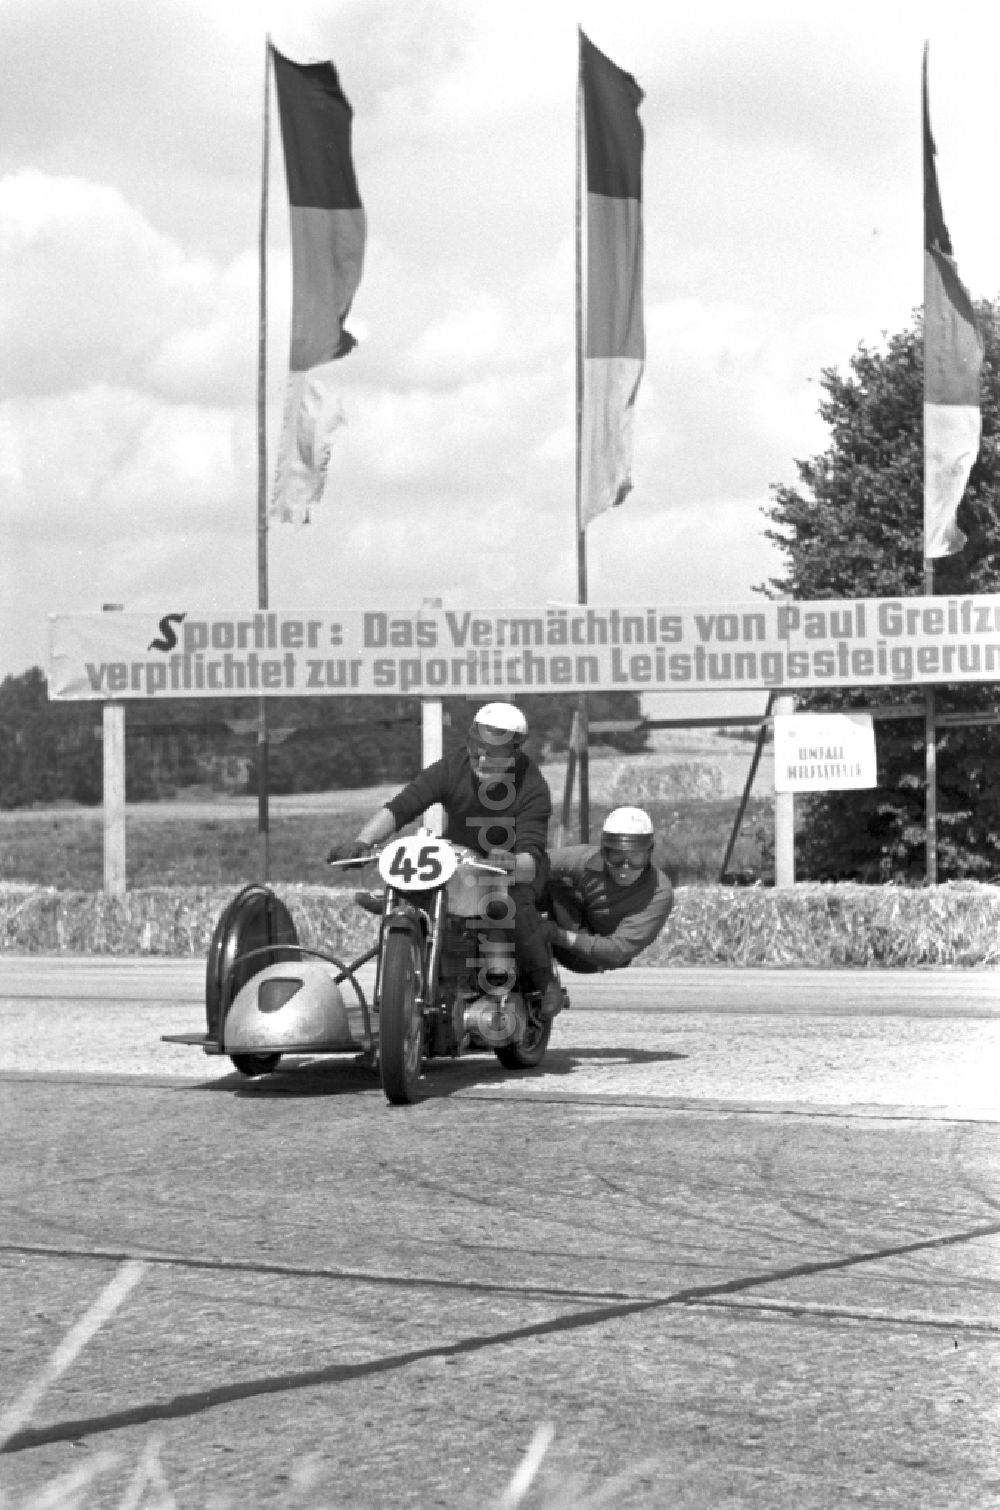 Dresden: Wettbewerb Autobahnspinne - Internationale Auto- und Motorradrennen auf der Autobahn in Dresden in Sachsen auf dem Gebiet der ehemaligen DDR